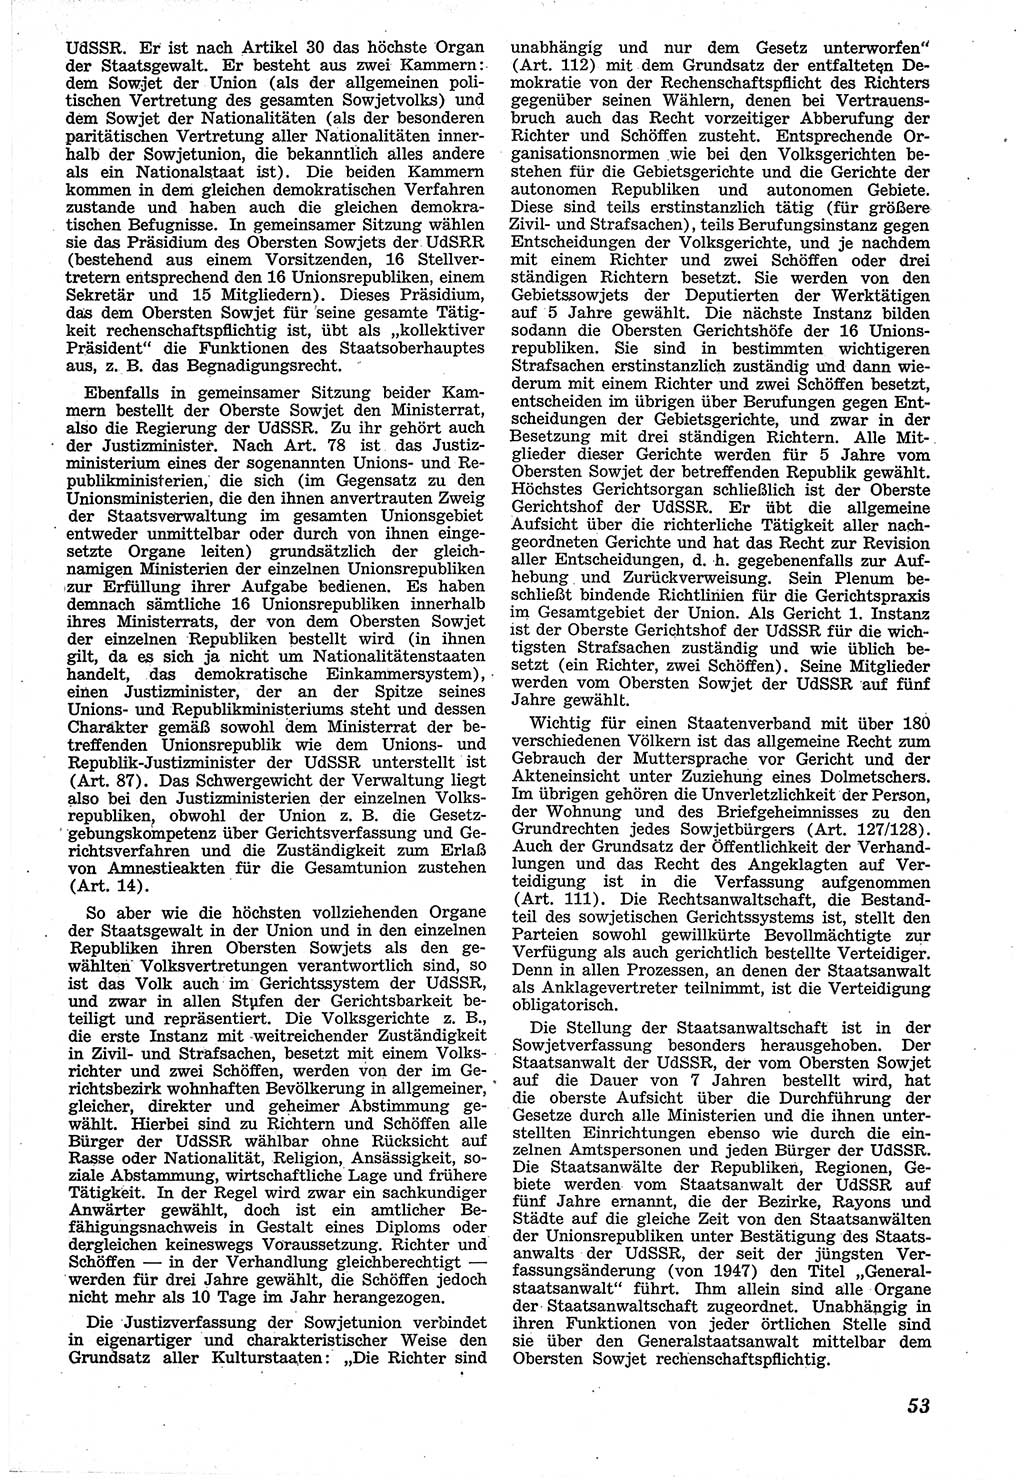 Neue Justiz (NJ), Zeitschrift für Recht und Rechtswissenschaft [Sowjetische Besatzungszone (SBZ) Deutschland], 1. Jahrgang 1947, Seite 53 (NJ SBZ Dtl. 1947, S. 53)